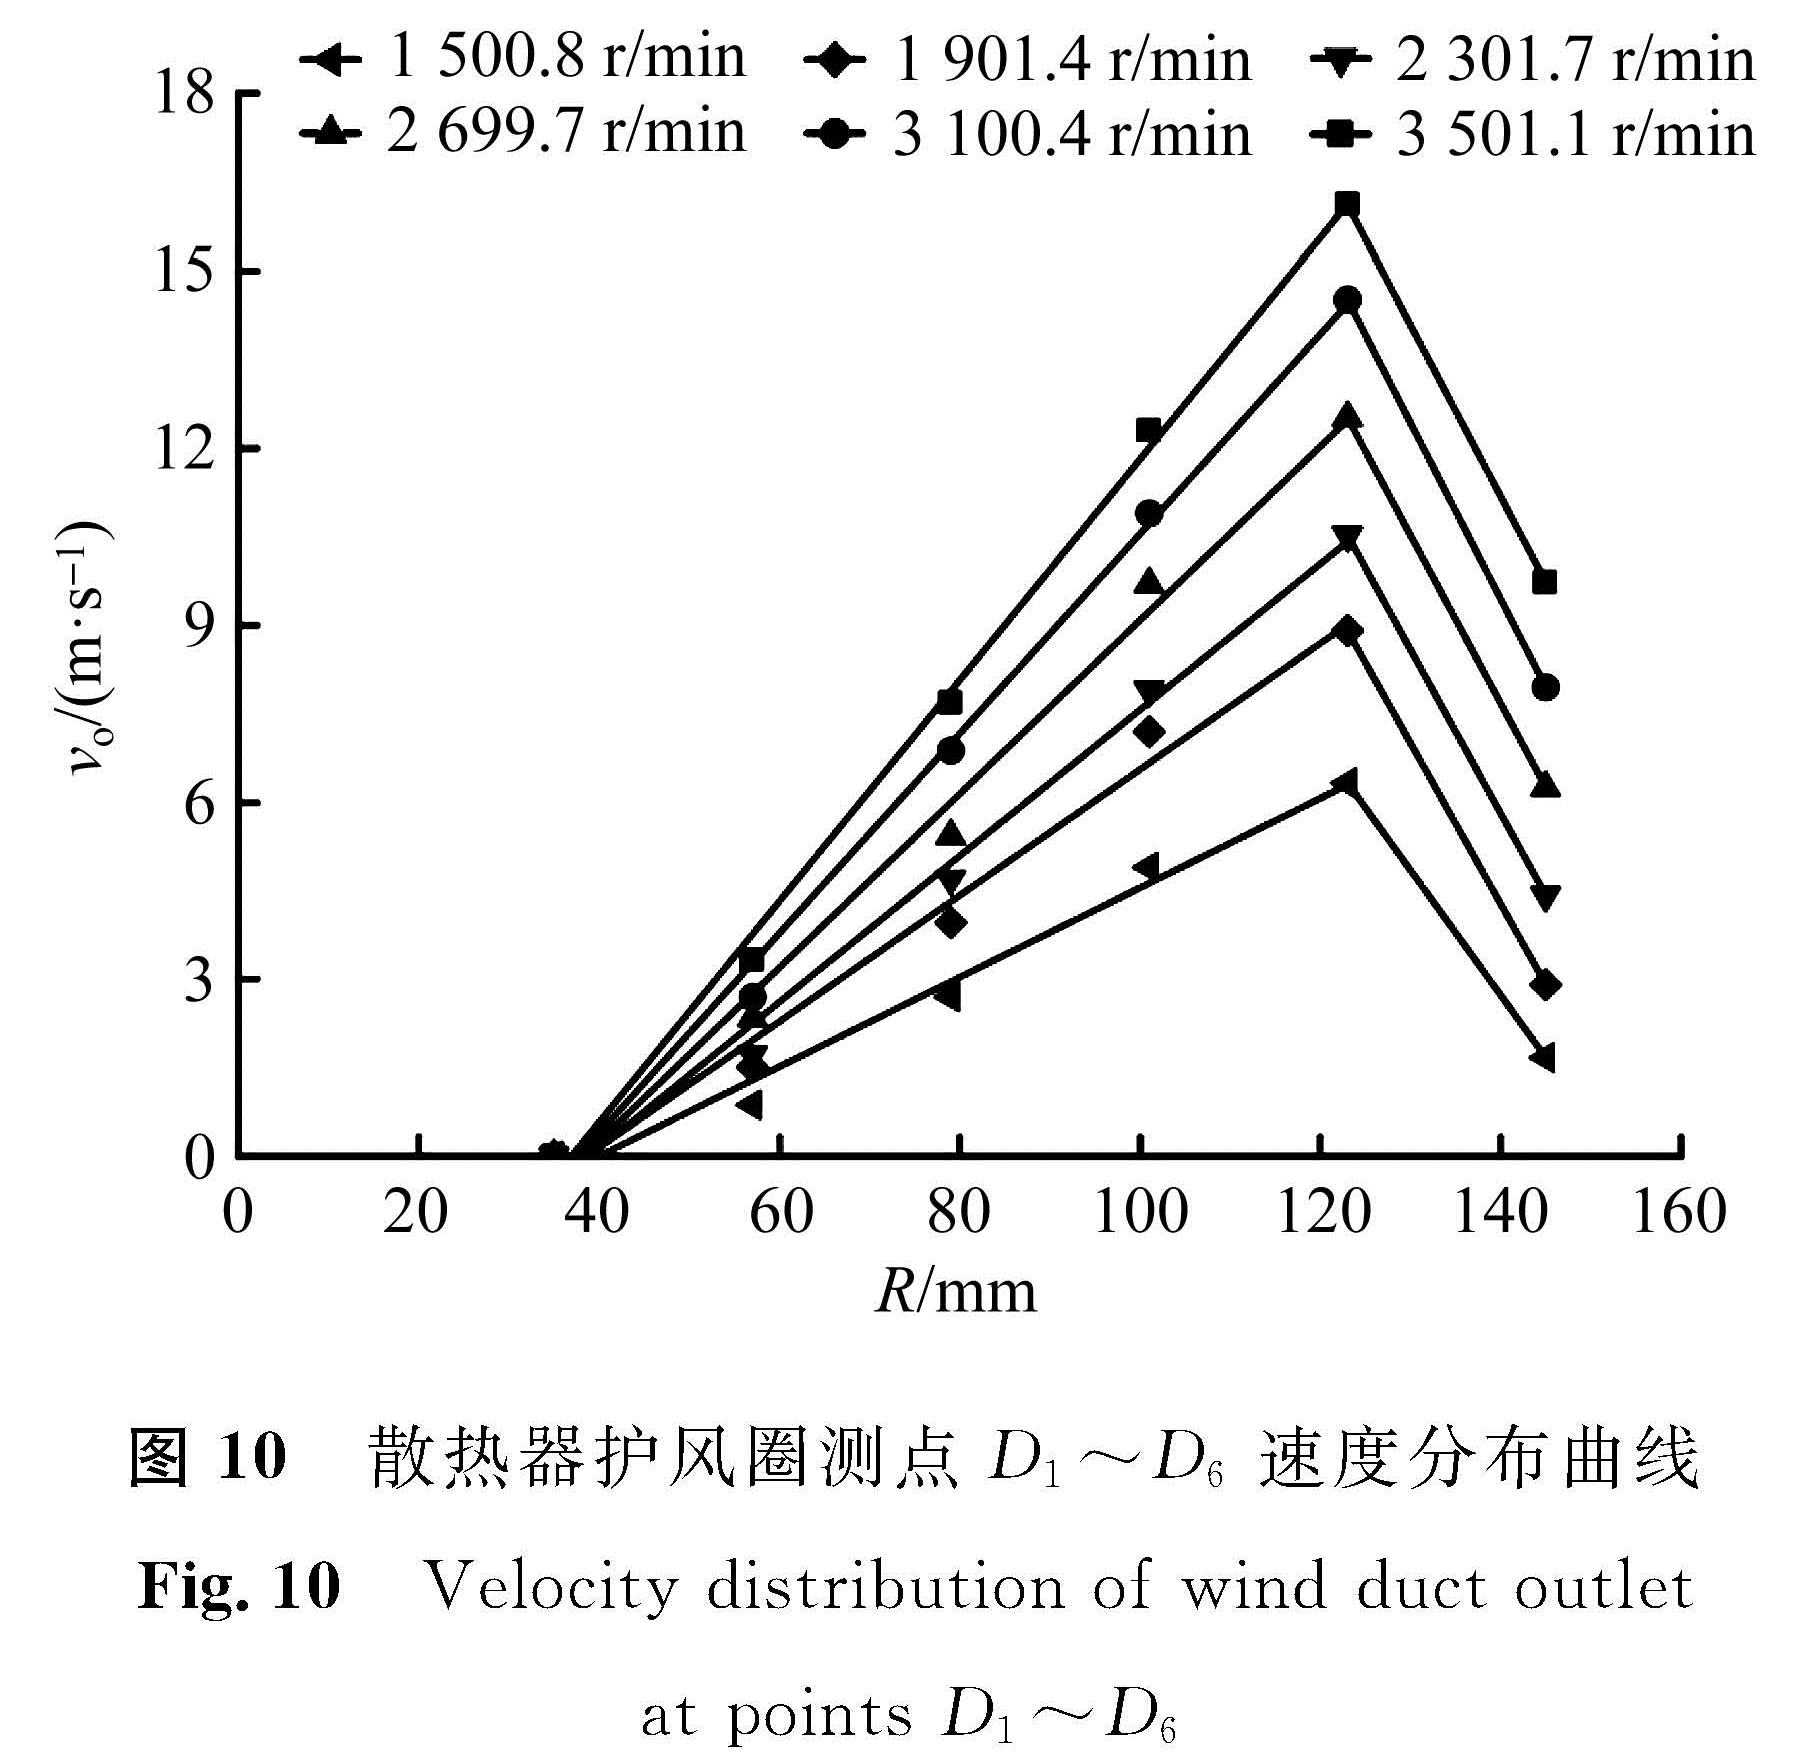 图 10 散热器护风圈测点D1～D6速度分布曲线<br/>Fig.10 Velocity distribution of wind duct outlet at points D1～D6